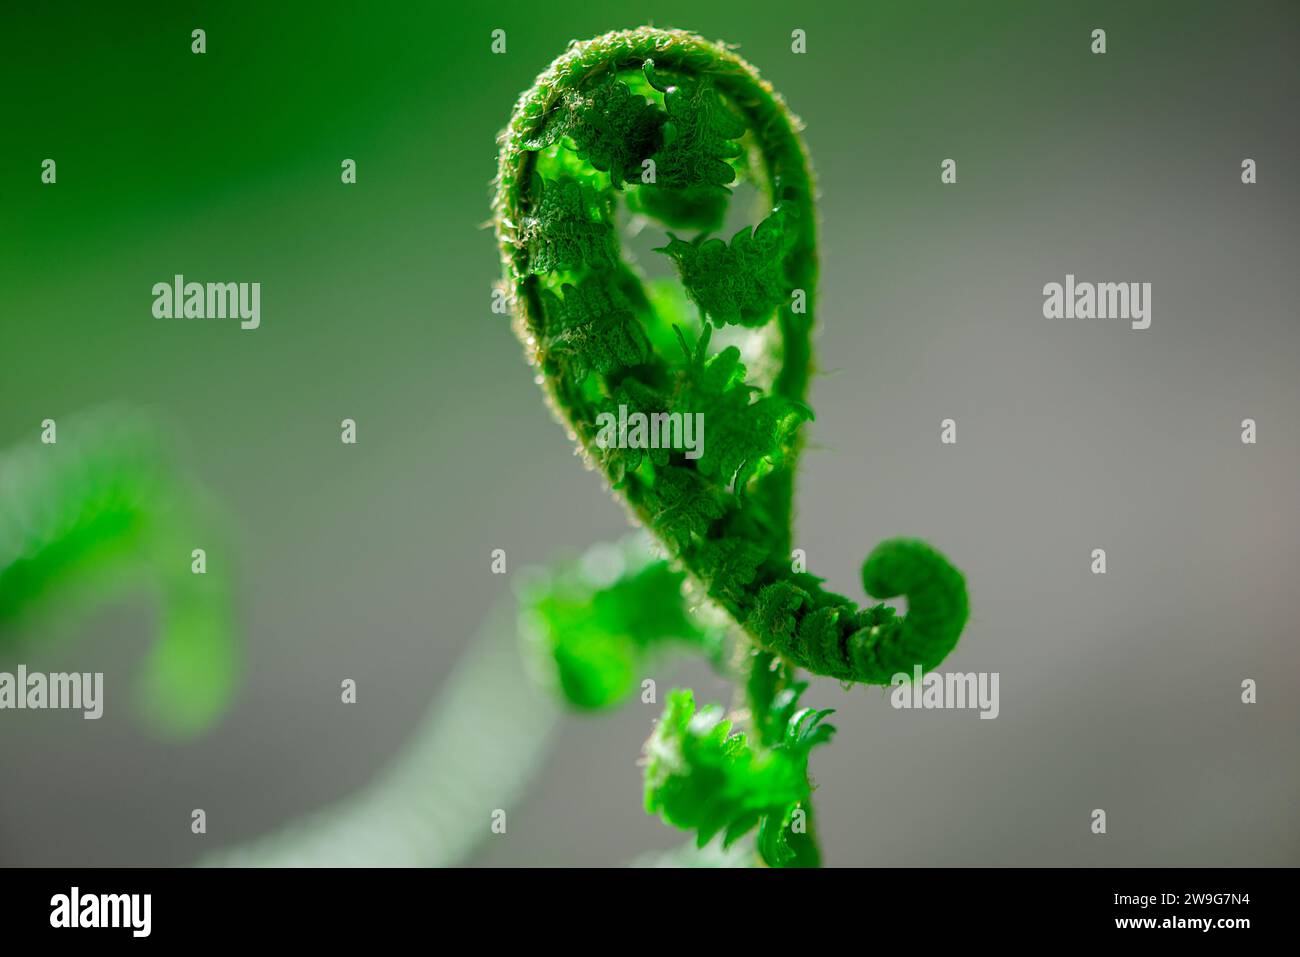 Eine einzelne grüne Pflanze mit einem gebogenen Blatt, das aus ihrem Stiel hervorgeht und auf einem hellgrauen Hintergrund wächst Stockfoto